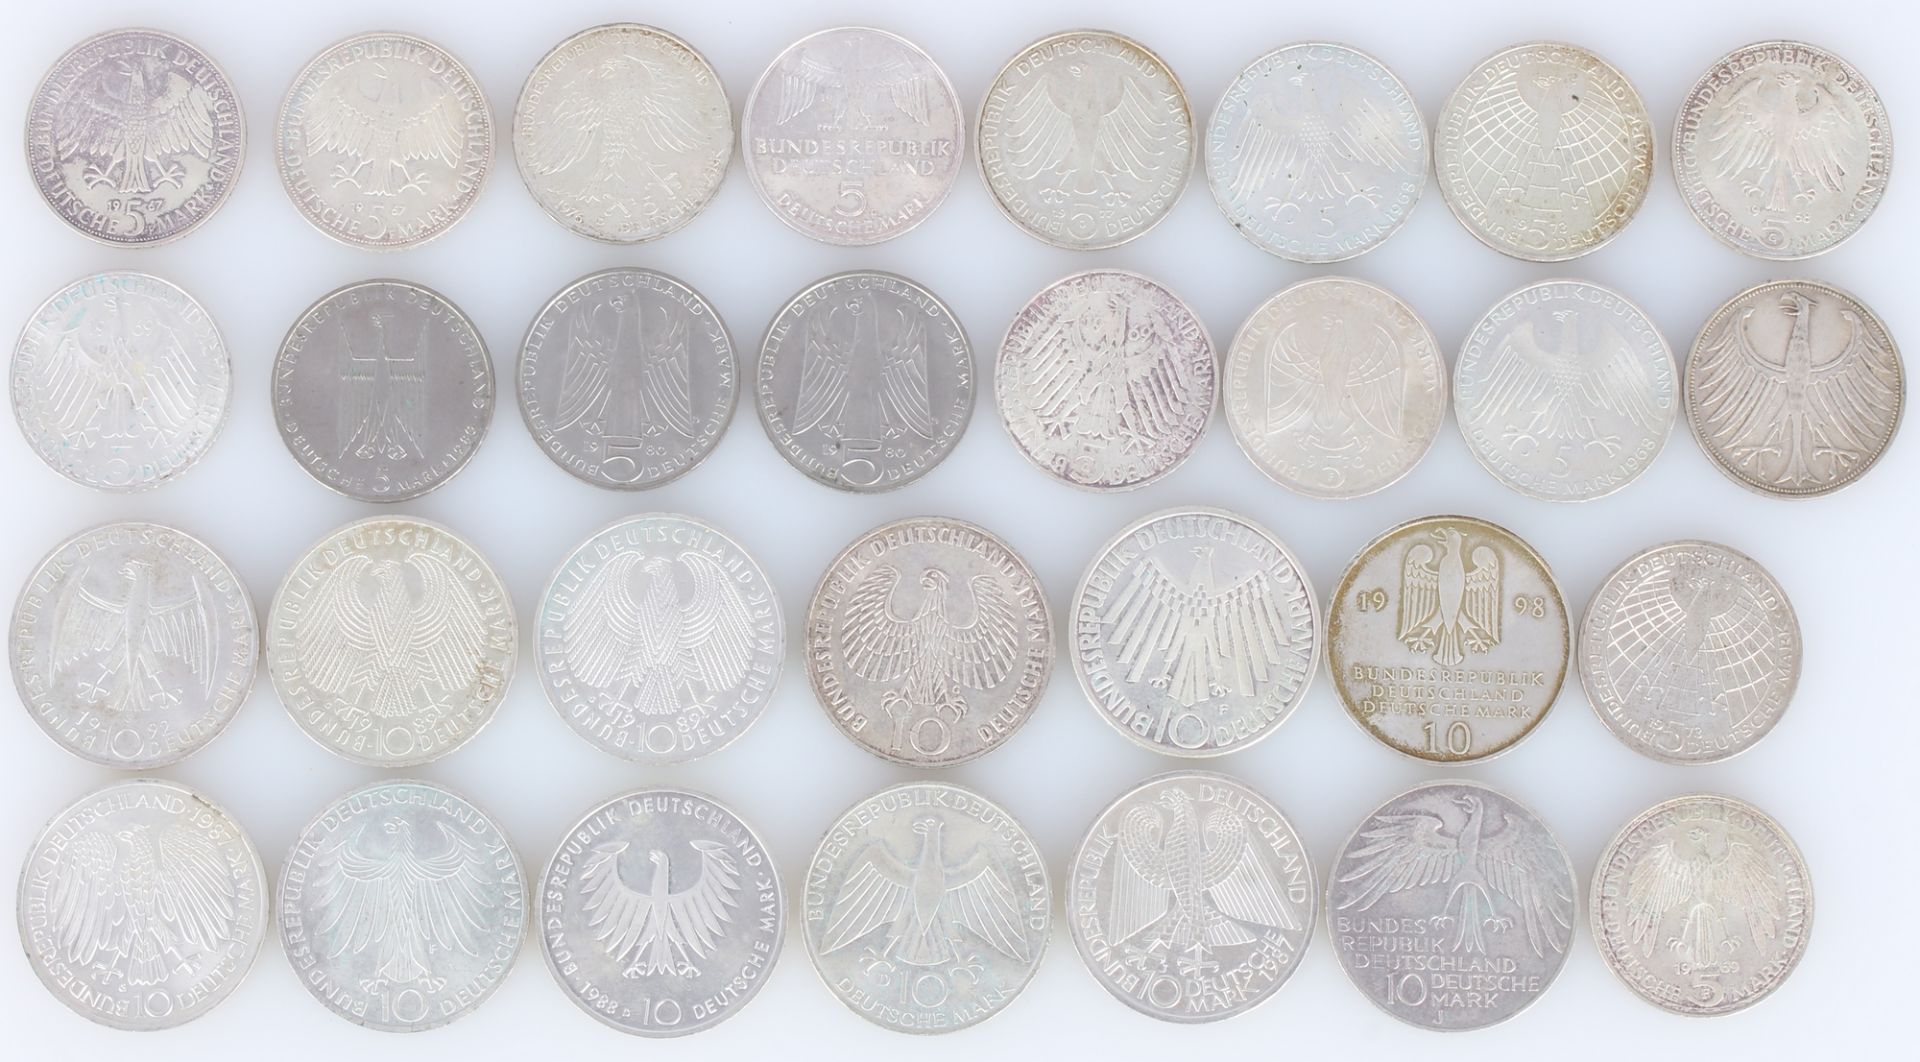 30 Münzen 5 DM & 10 DM Deutsche Mark 1967-1998, 30 german silver coins, - Bild 2 aus 2